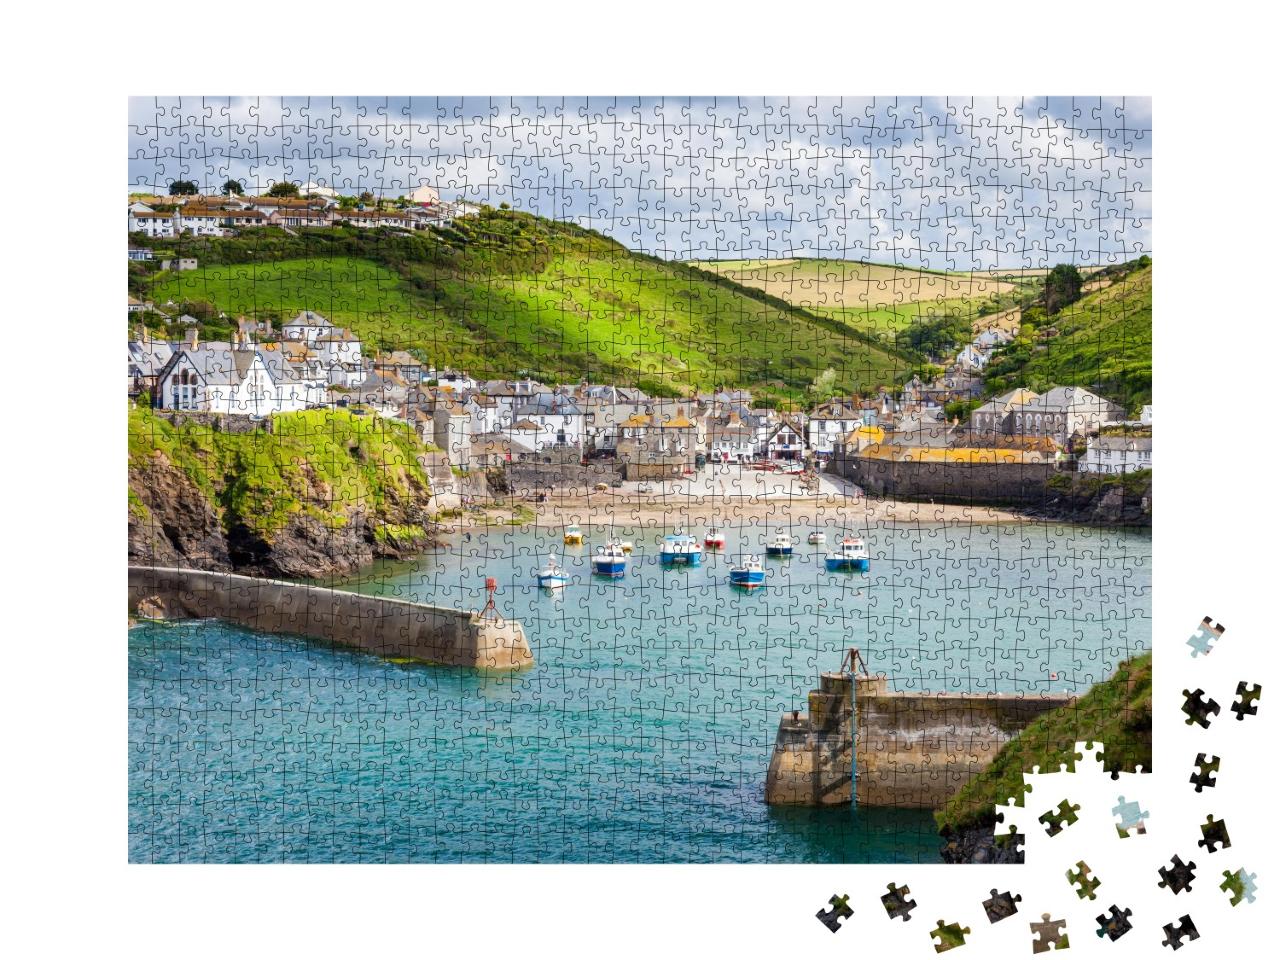 Puzzle de 1000 pièces « Village de pêcheurs de Port Isaac sur la côte de North Cornwall, Angleterre »